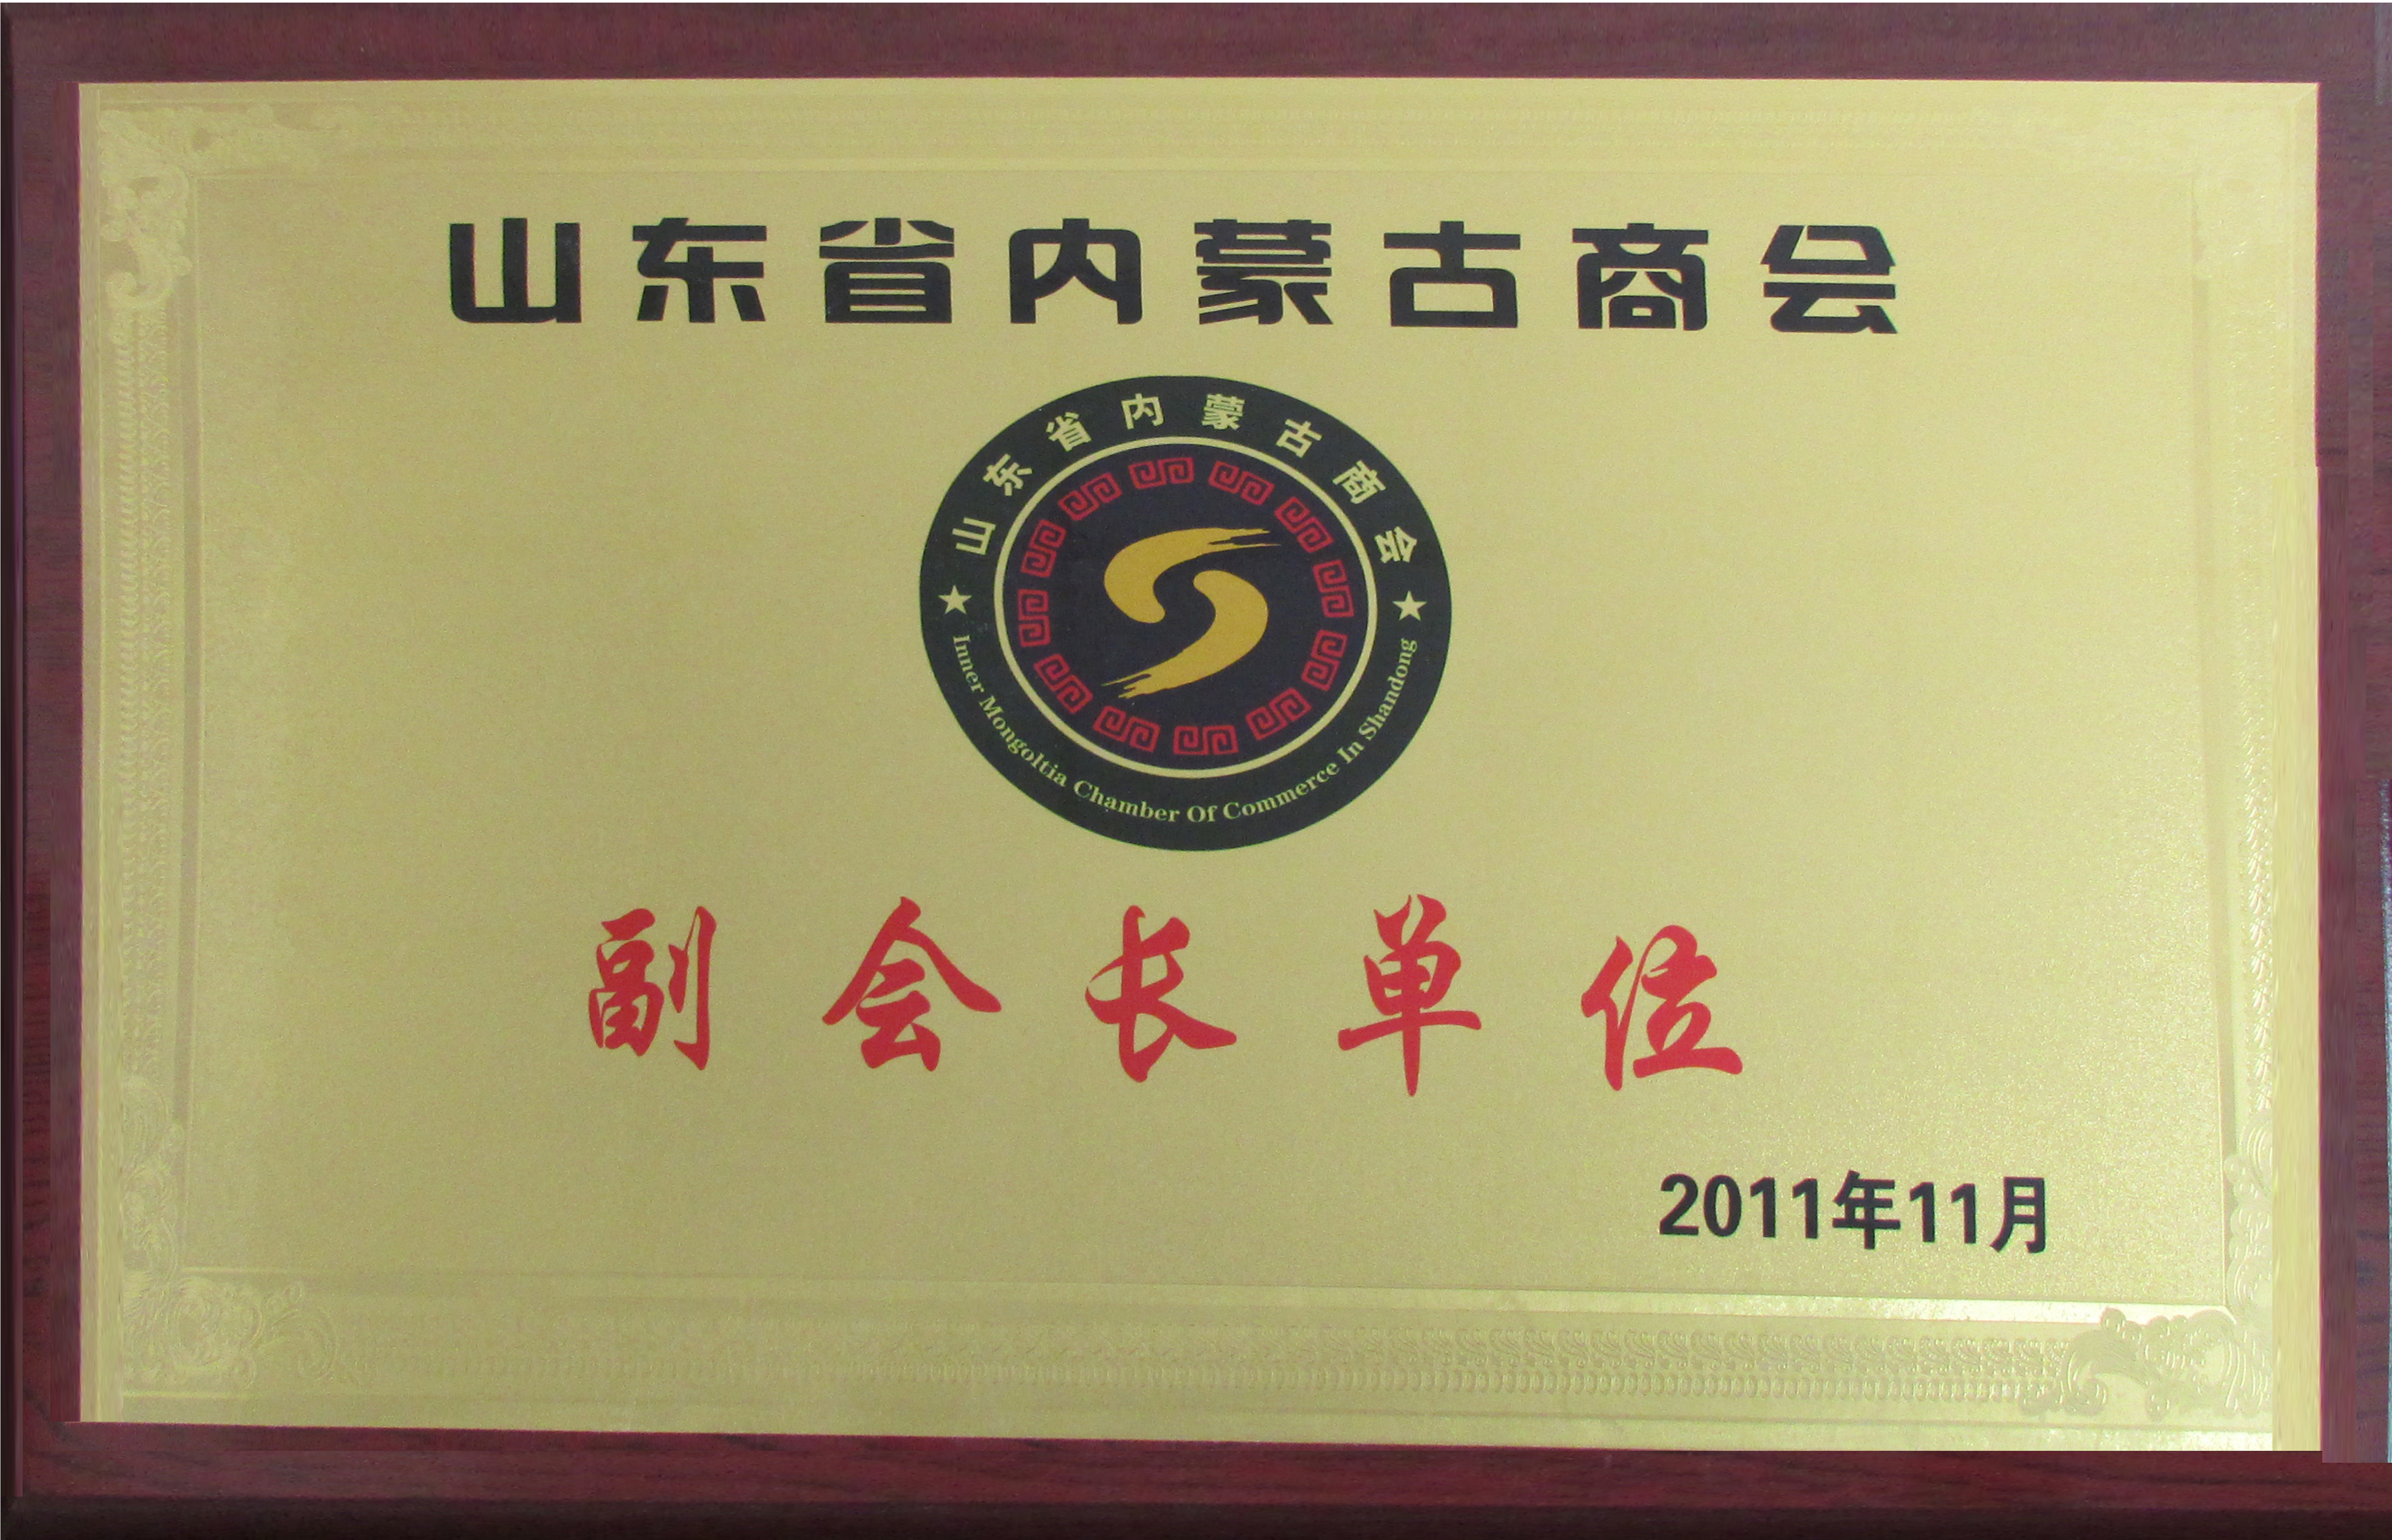 2011年11月成立了山東內蒙古商會